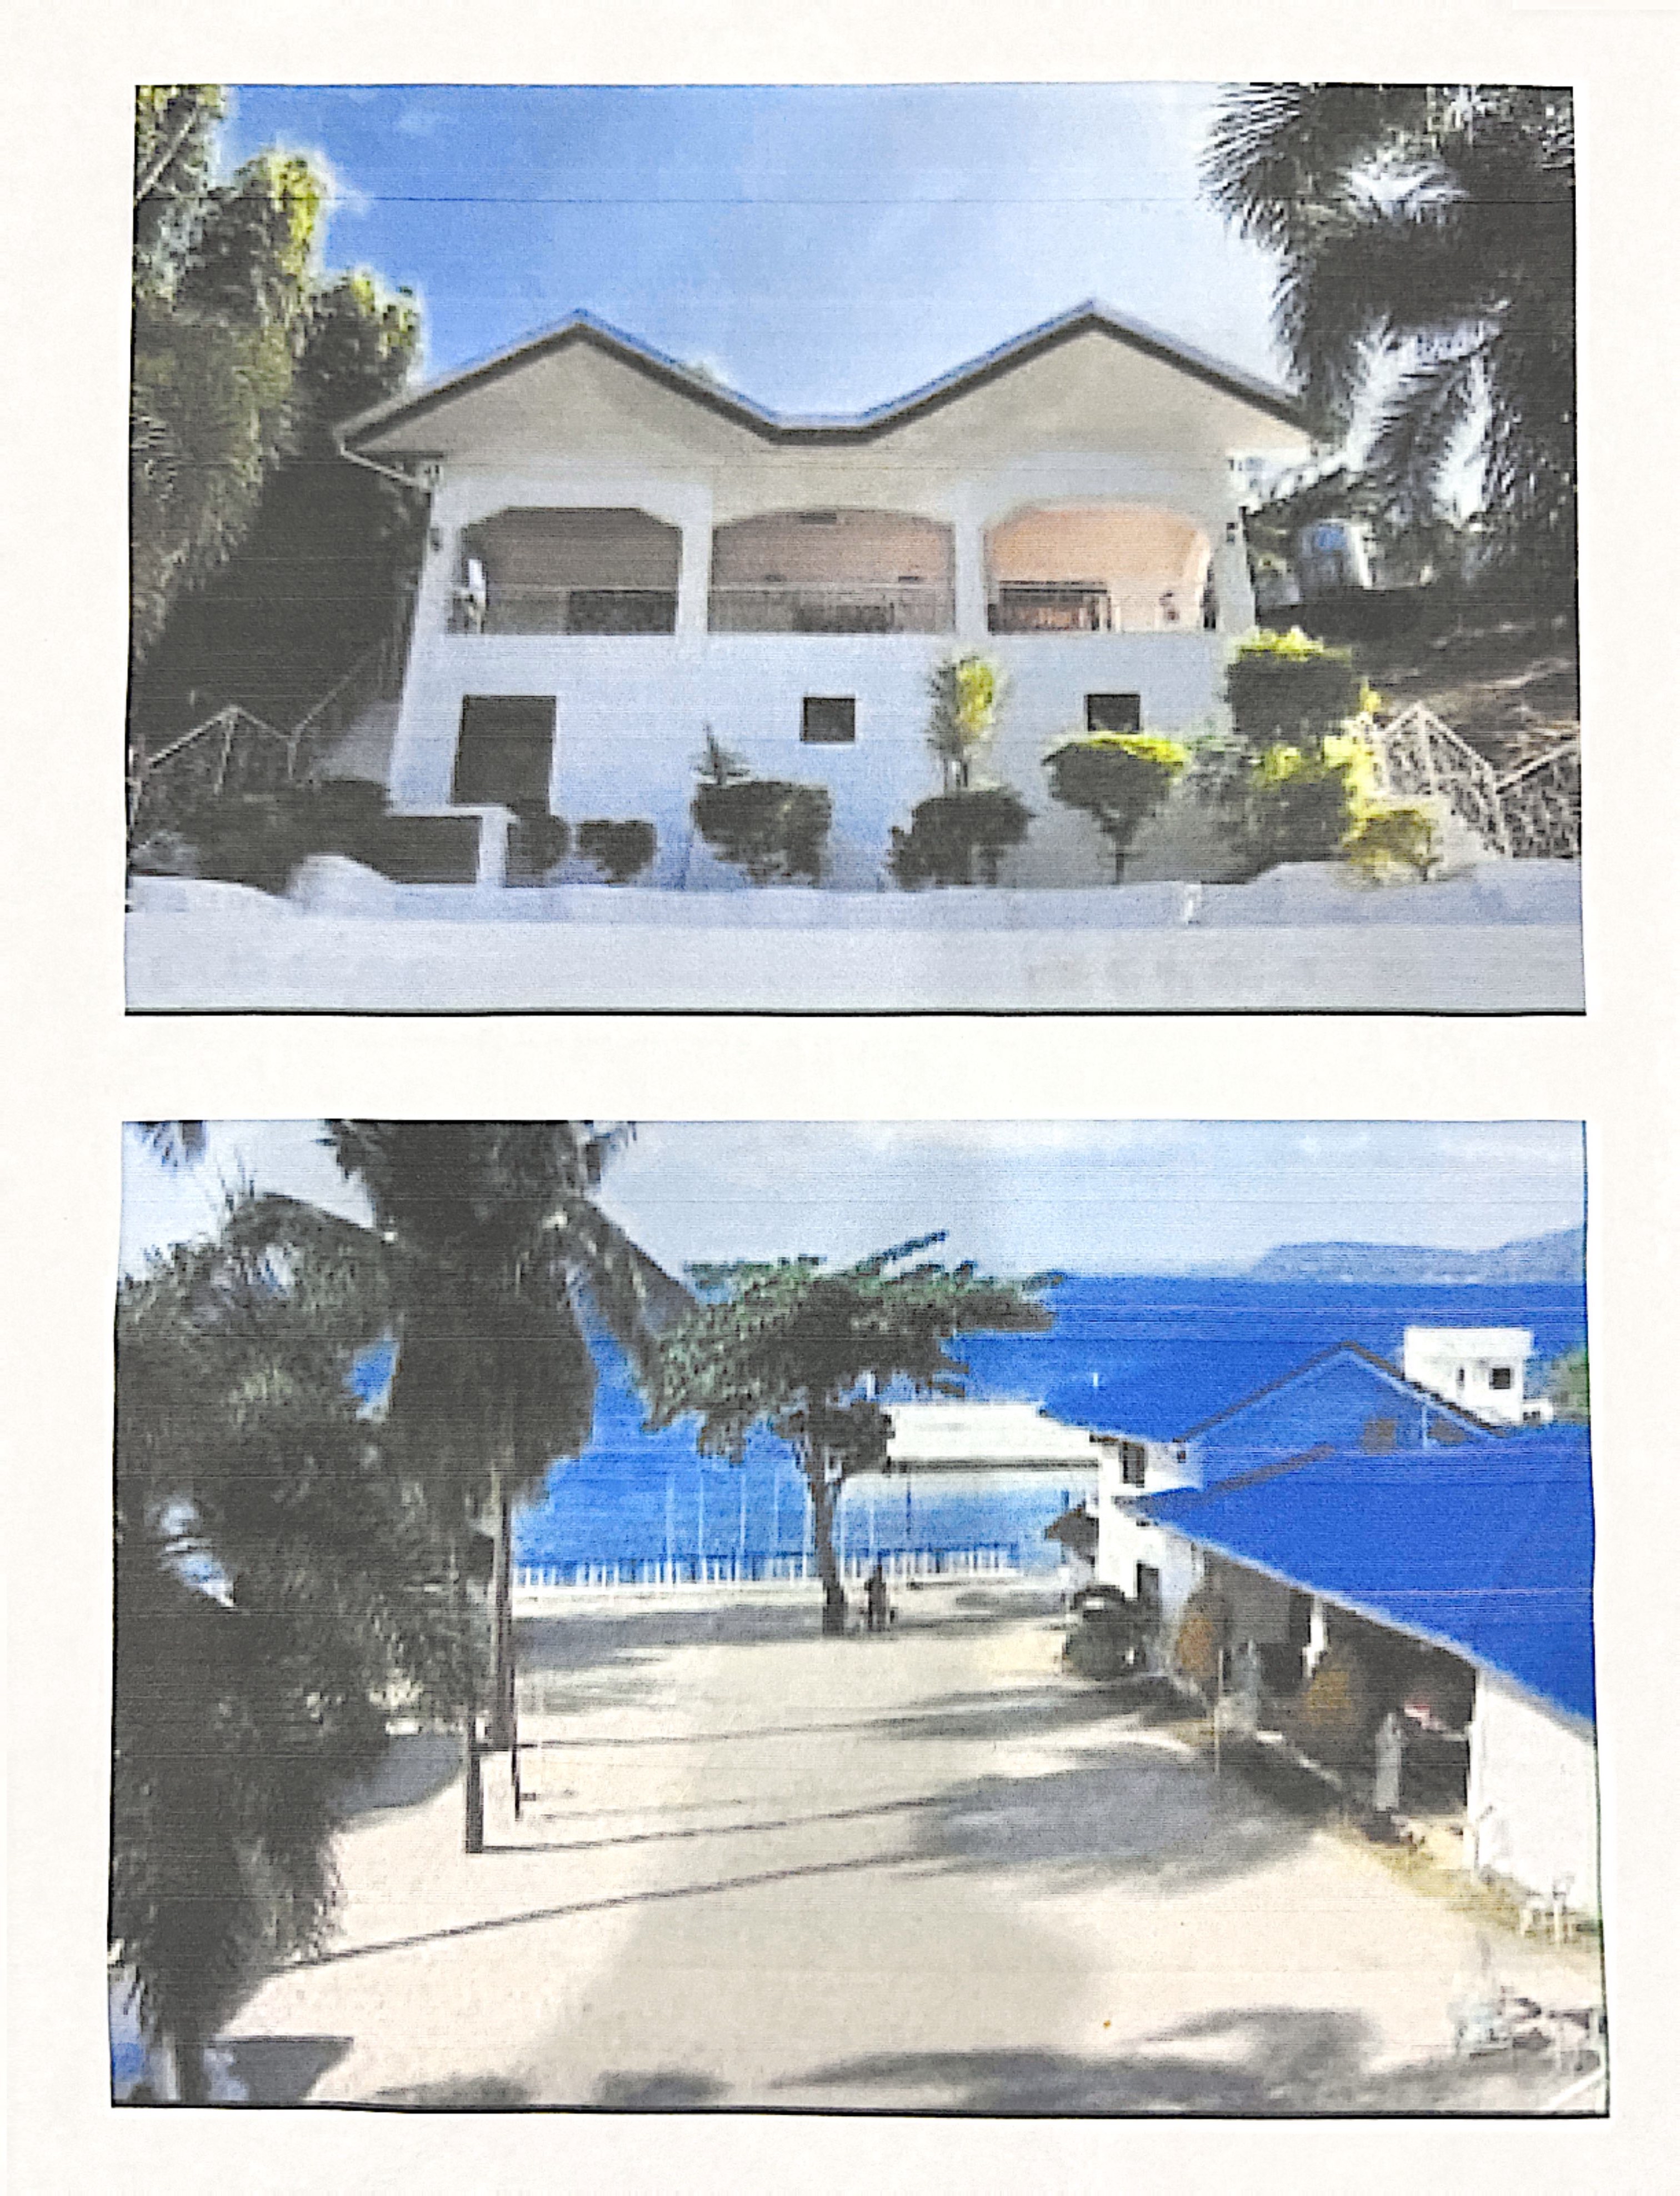 菲律宾 Batangas海边度假村+土地永久权 | PHP:160,000,000|出售公告